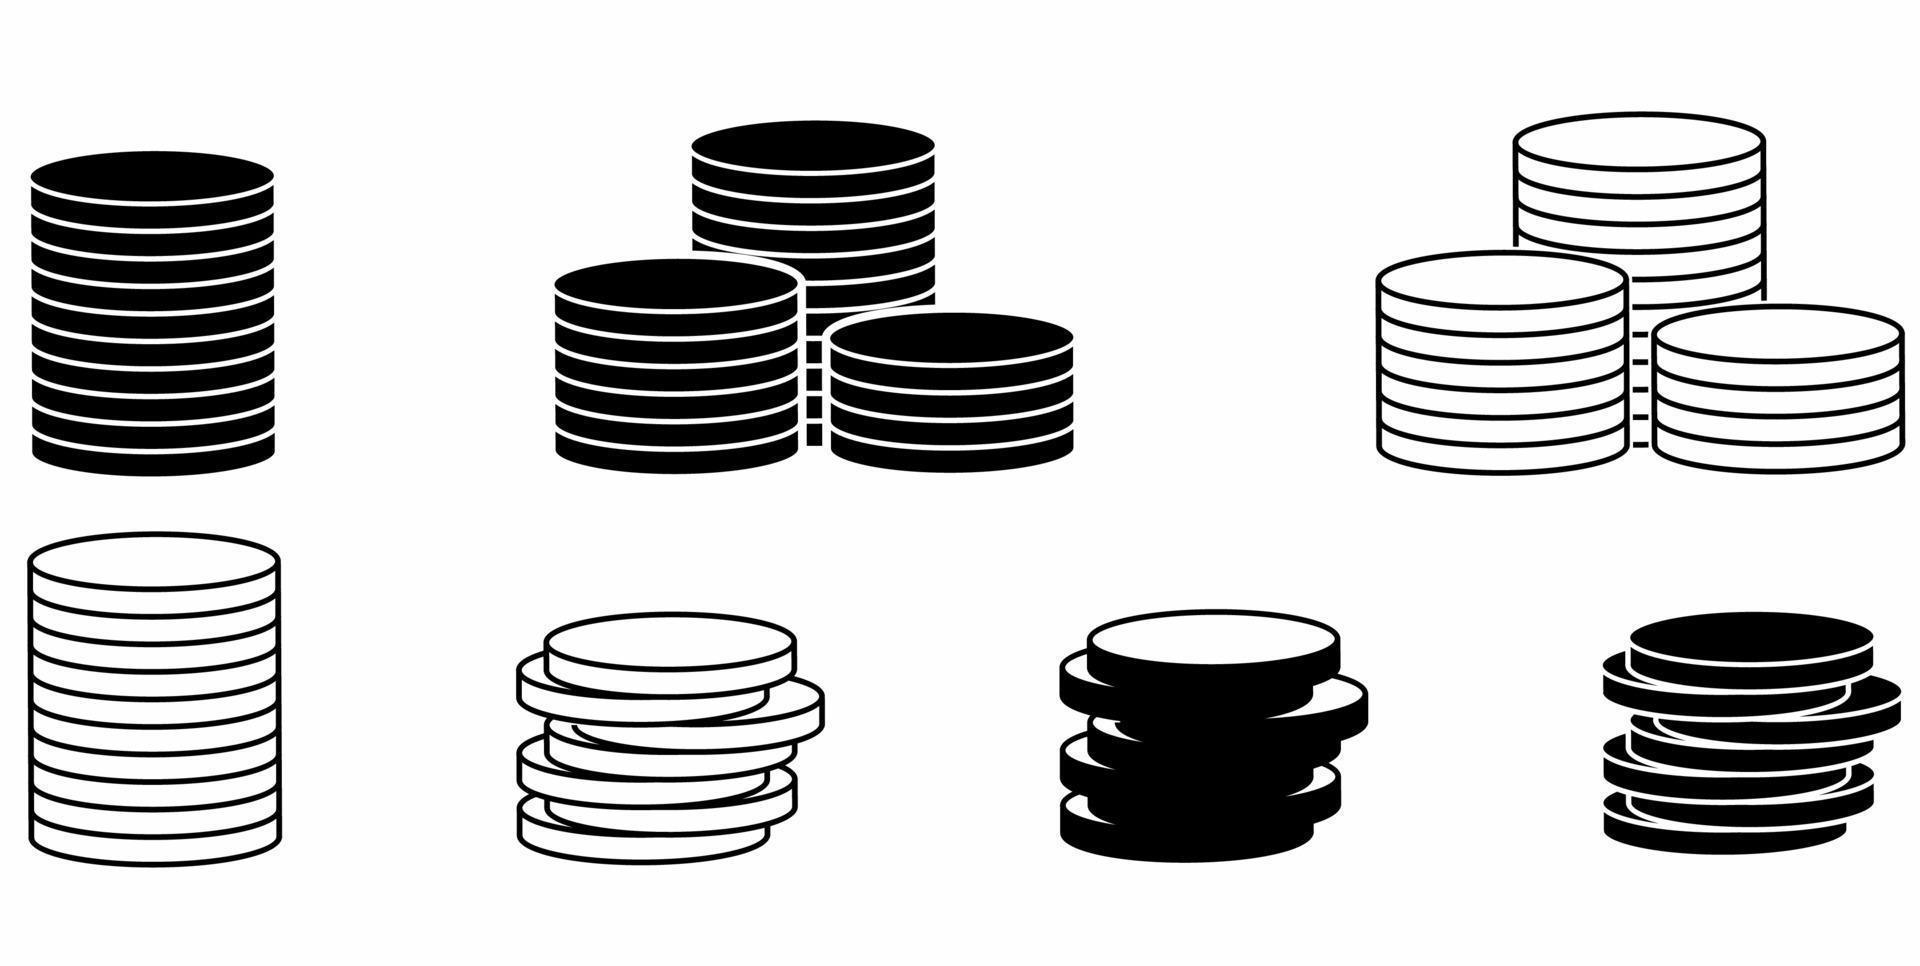 Stapel von Münzen Symbolsatz isoliert auf weißem Hintergrund. Geld-Symbol-Vektor-Illustration vektor